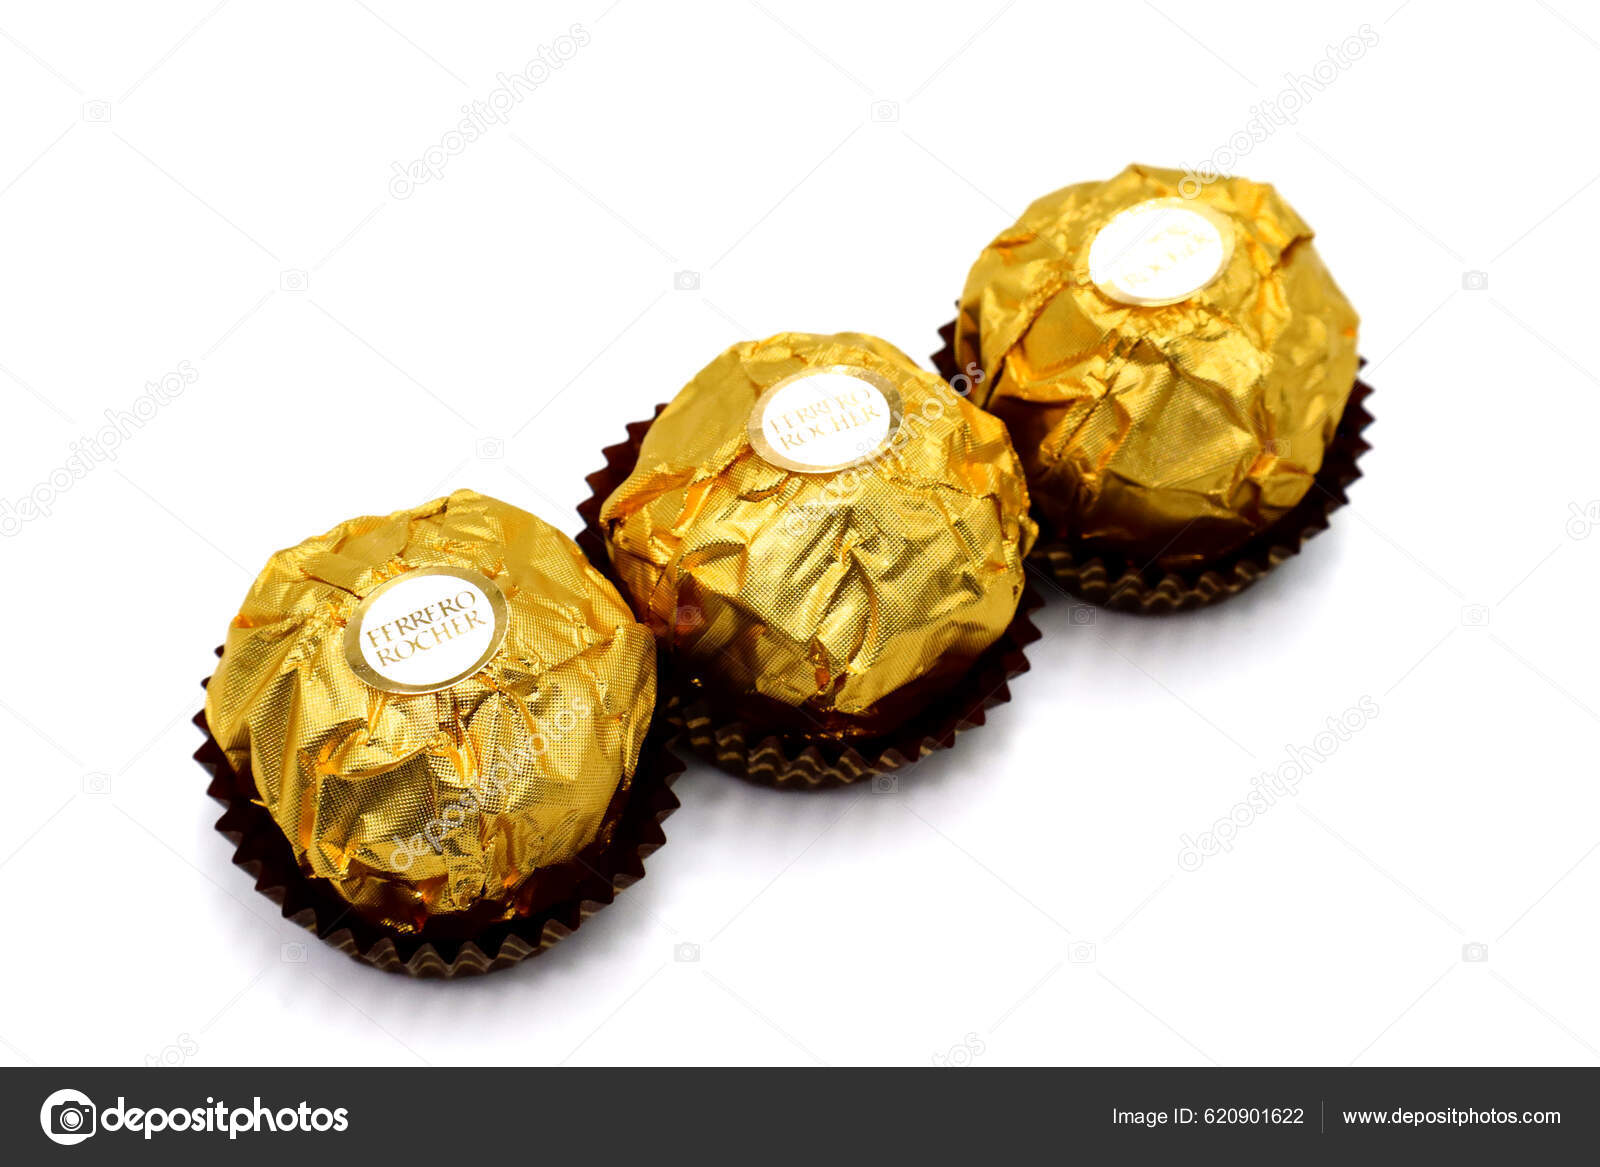 Ferrero images libres de droit, photos de Ferrero | Depositphotos